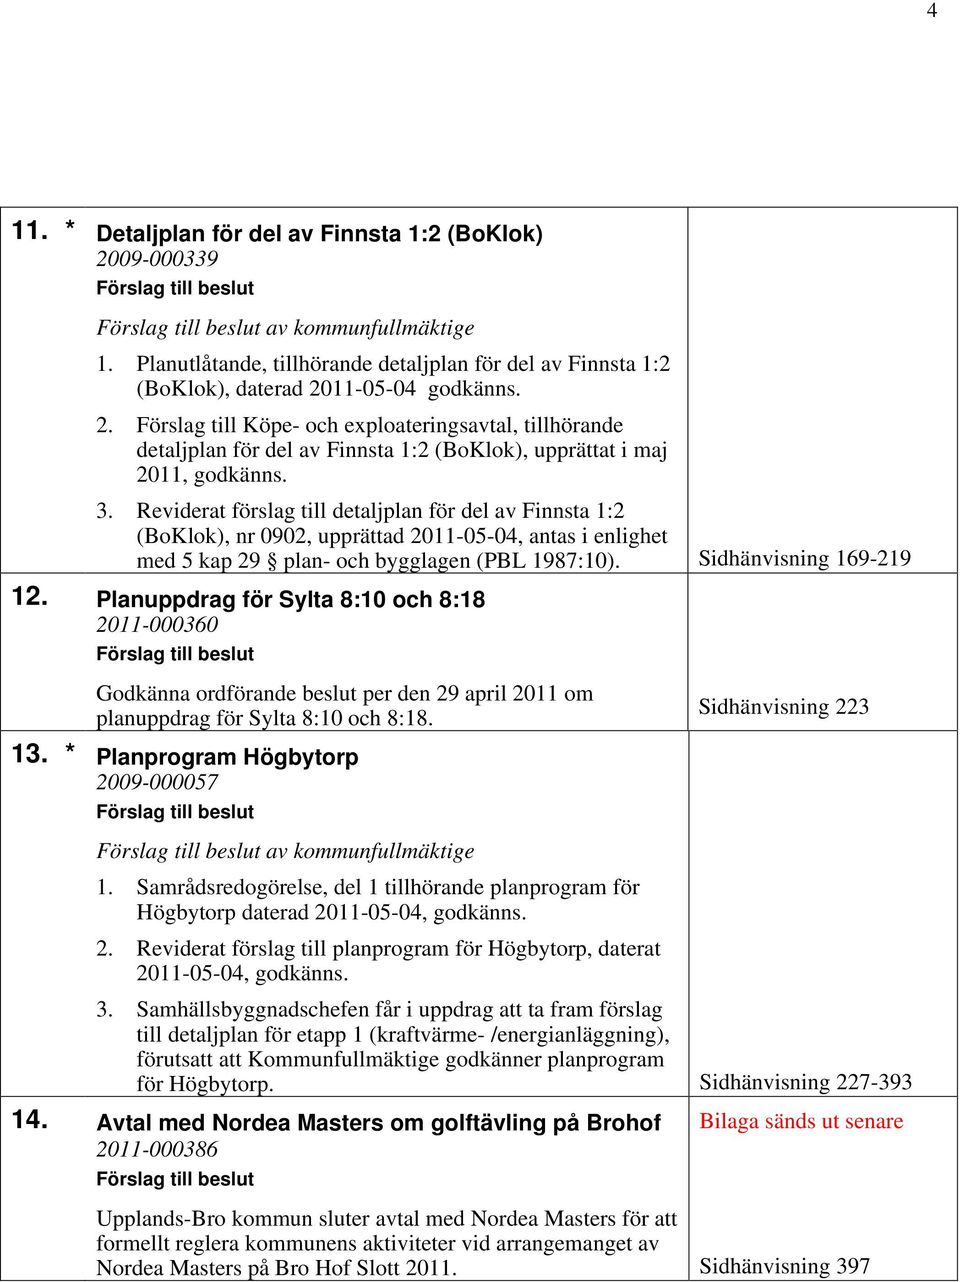 Planuppdrag för Sylta 8:10 och 8:18 2011-000360 Godkänna ordförande beslut per den 29 april 2011 om planuppdrag för Sylta 8:10 och 8:18. Sidhänvisning 223 13.